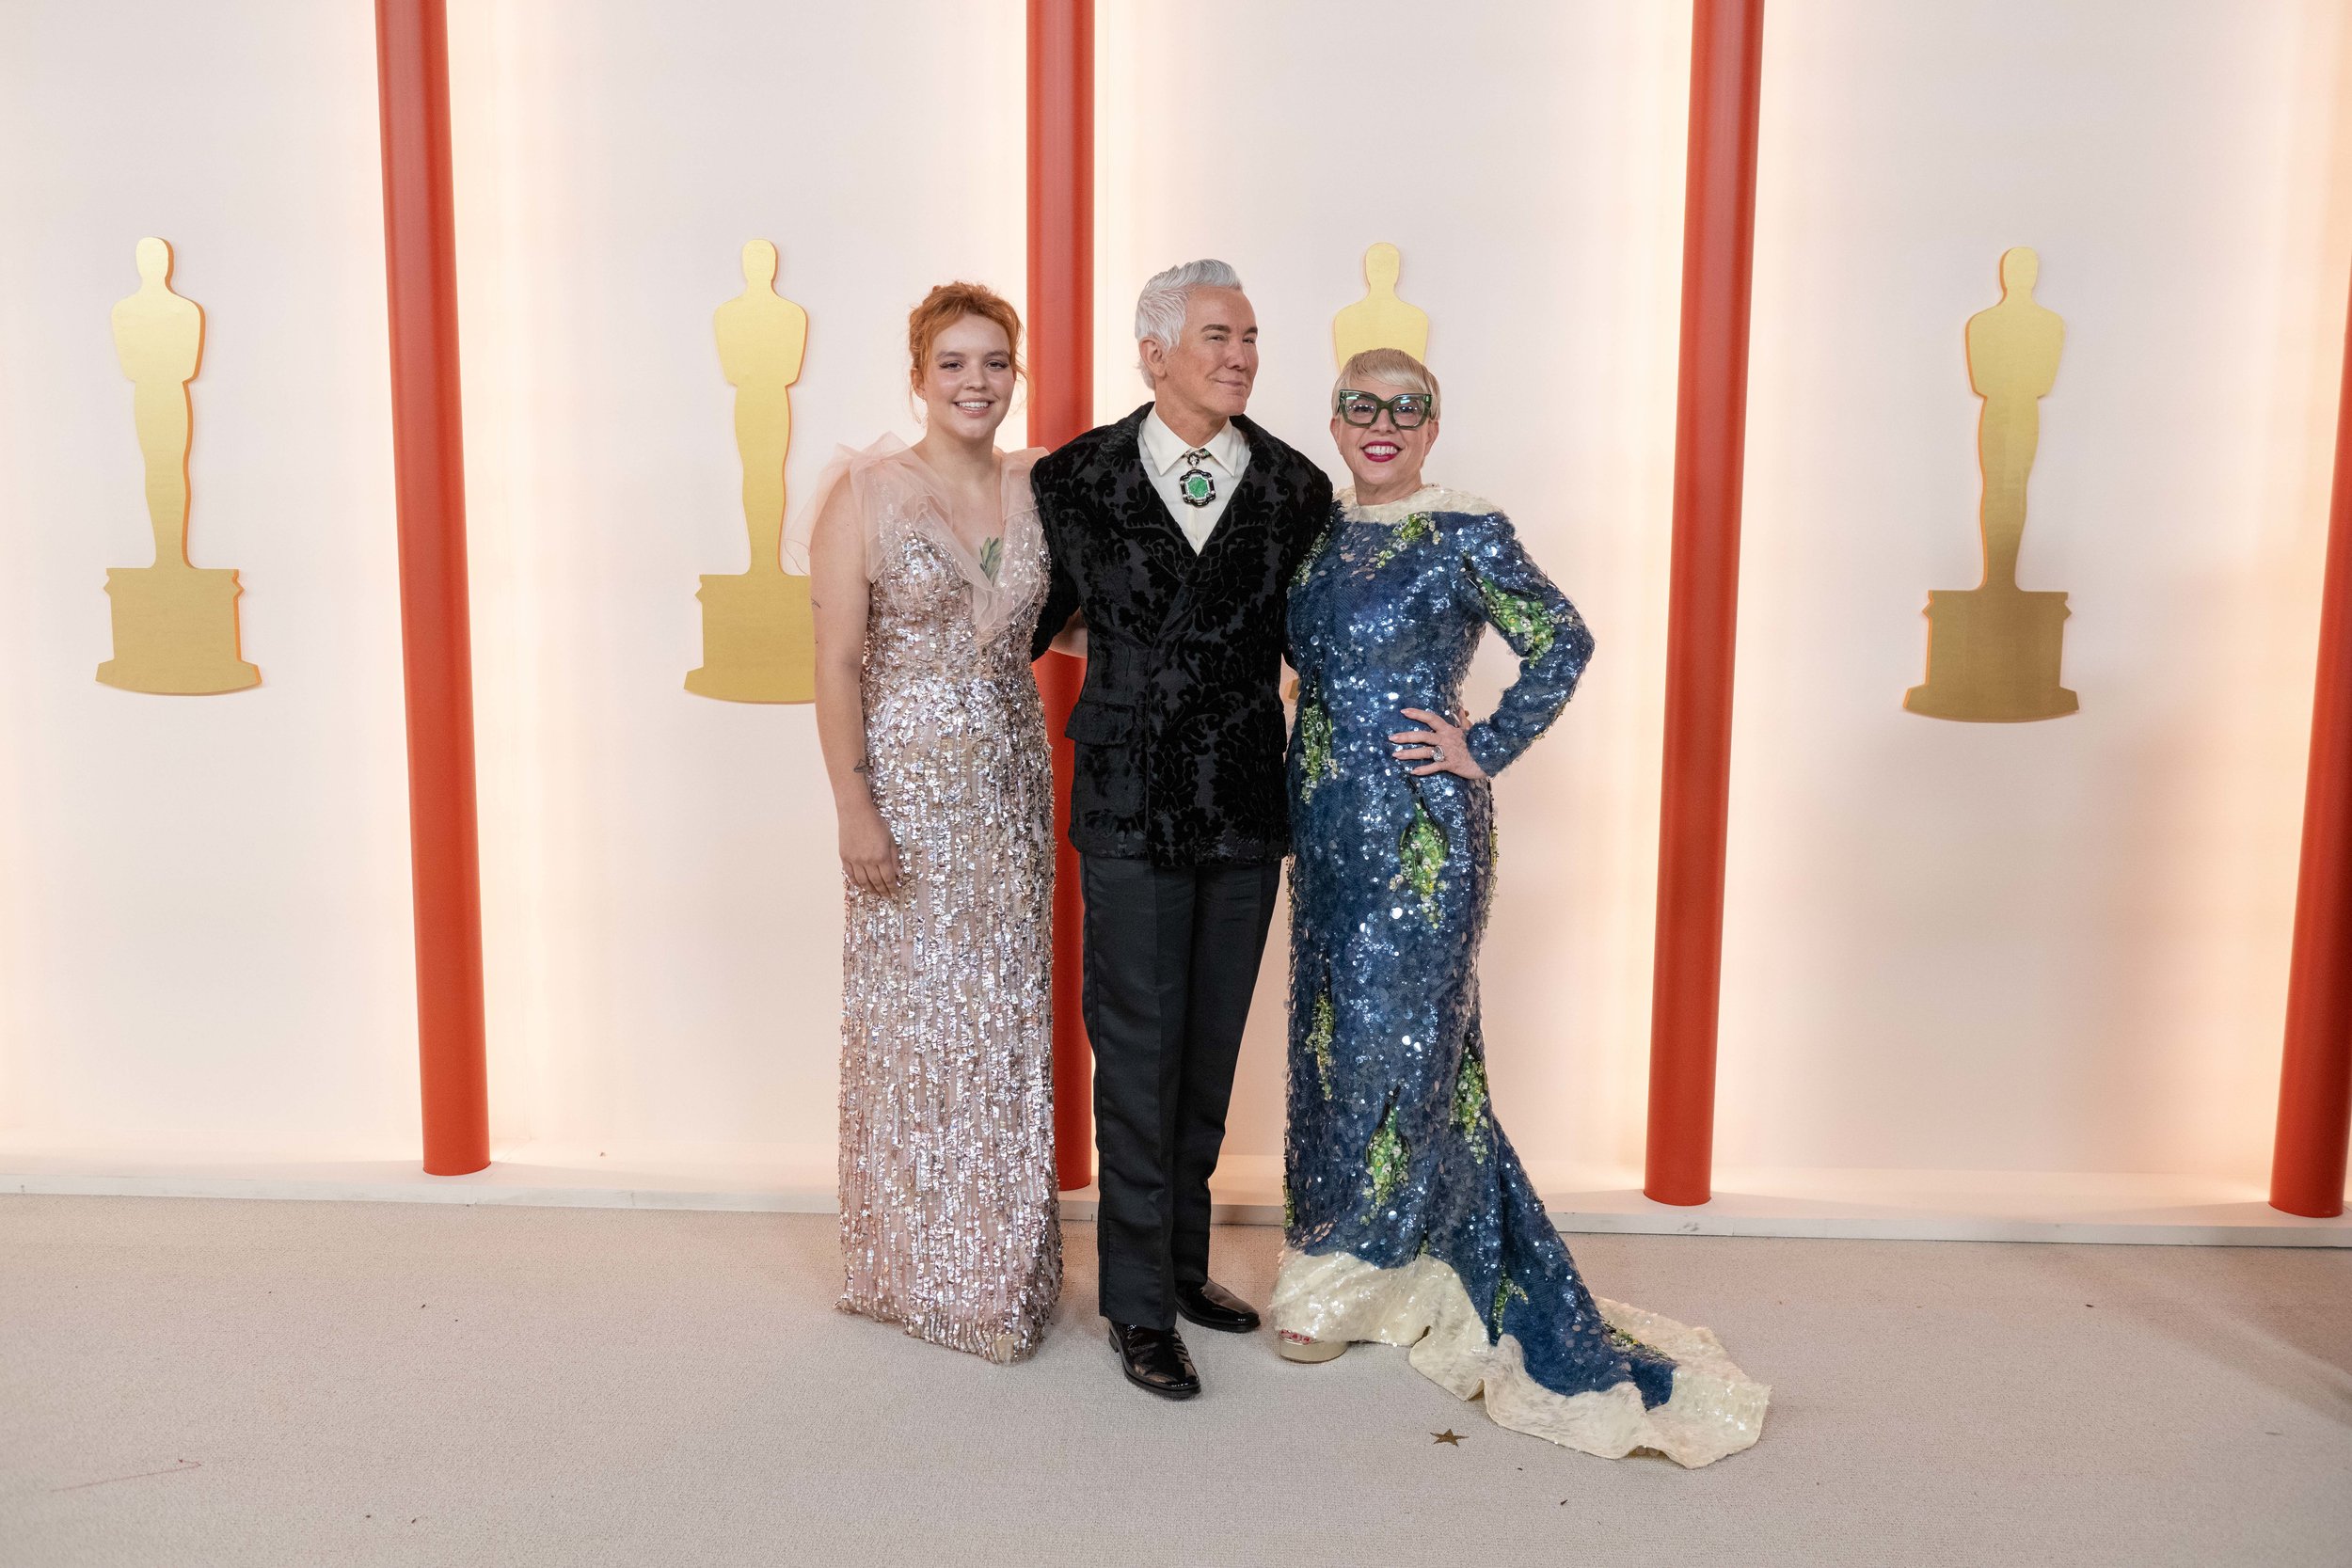 Lillian Amanda Luhrmann, Baz Luhrmann and Catherine Martin arrive on the red carpet of The 95th Oscars